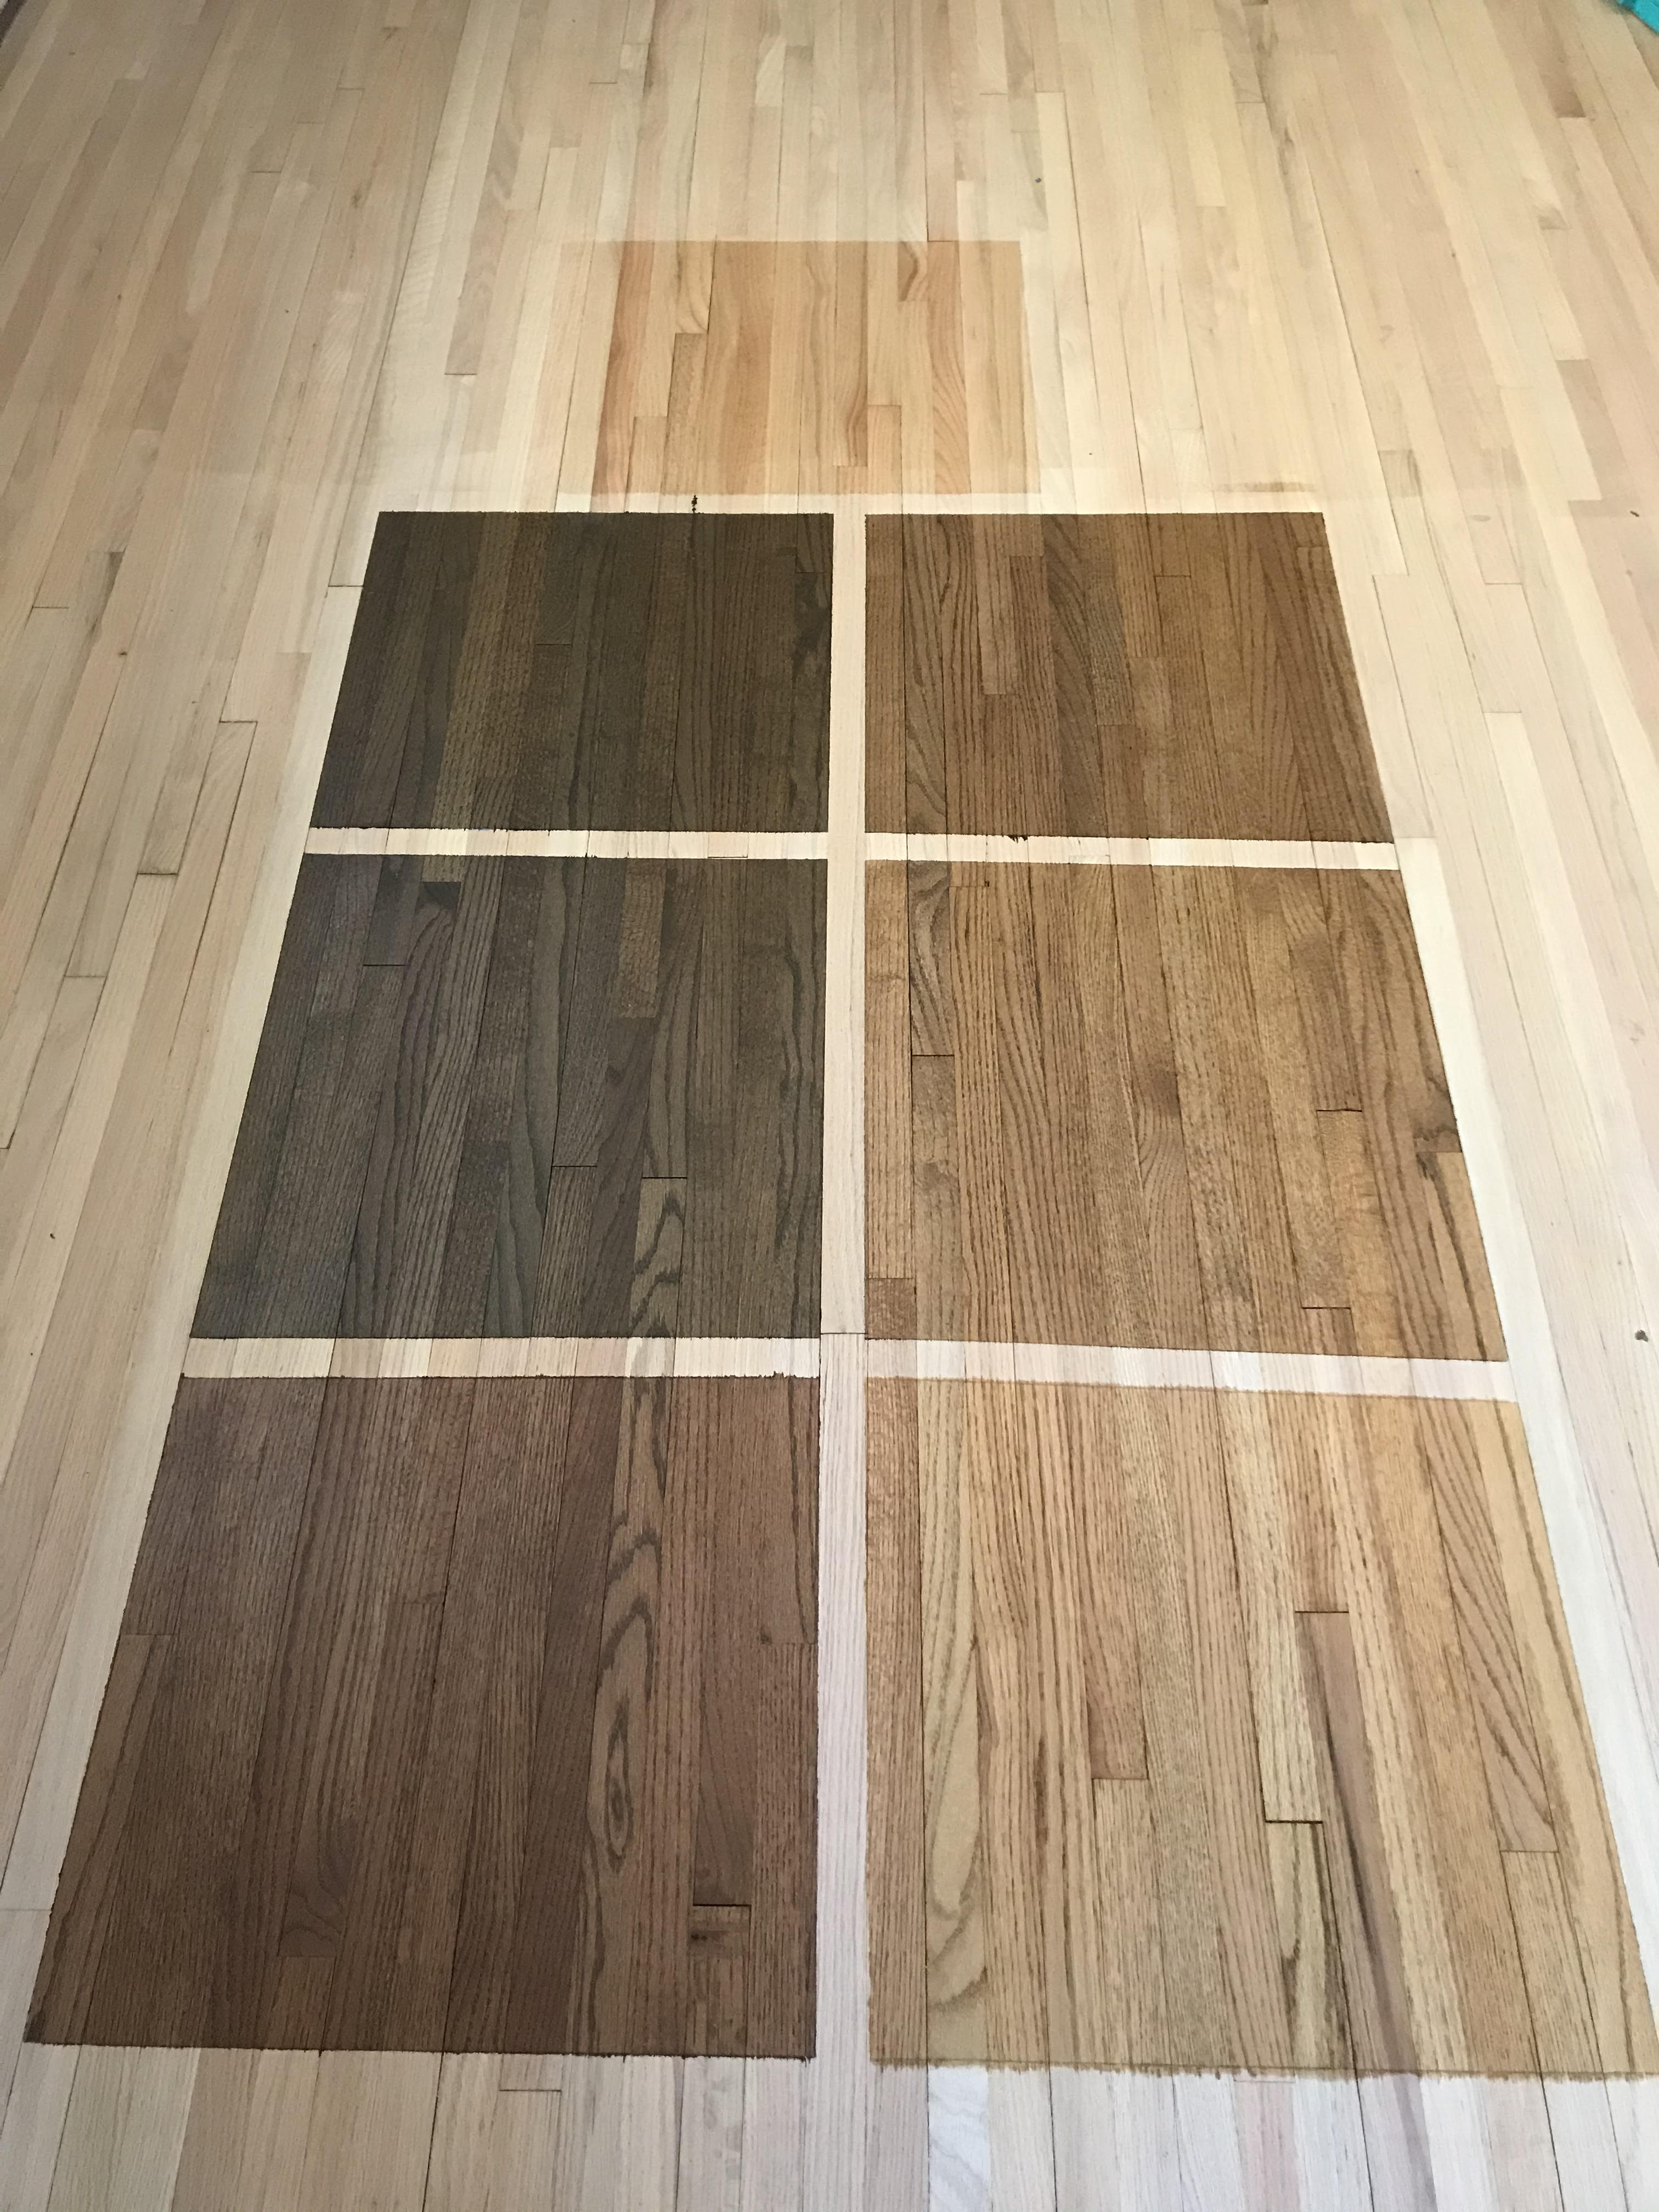 Hardwood Floor Refinishing Ub, What Is The Easiest Way To Refinish Hardwood Floors